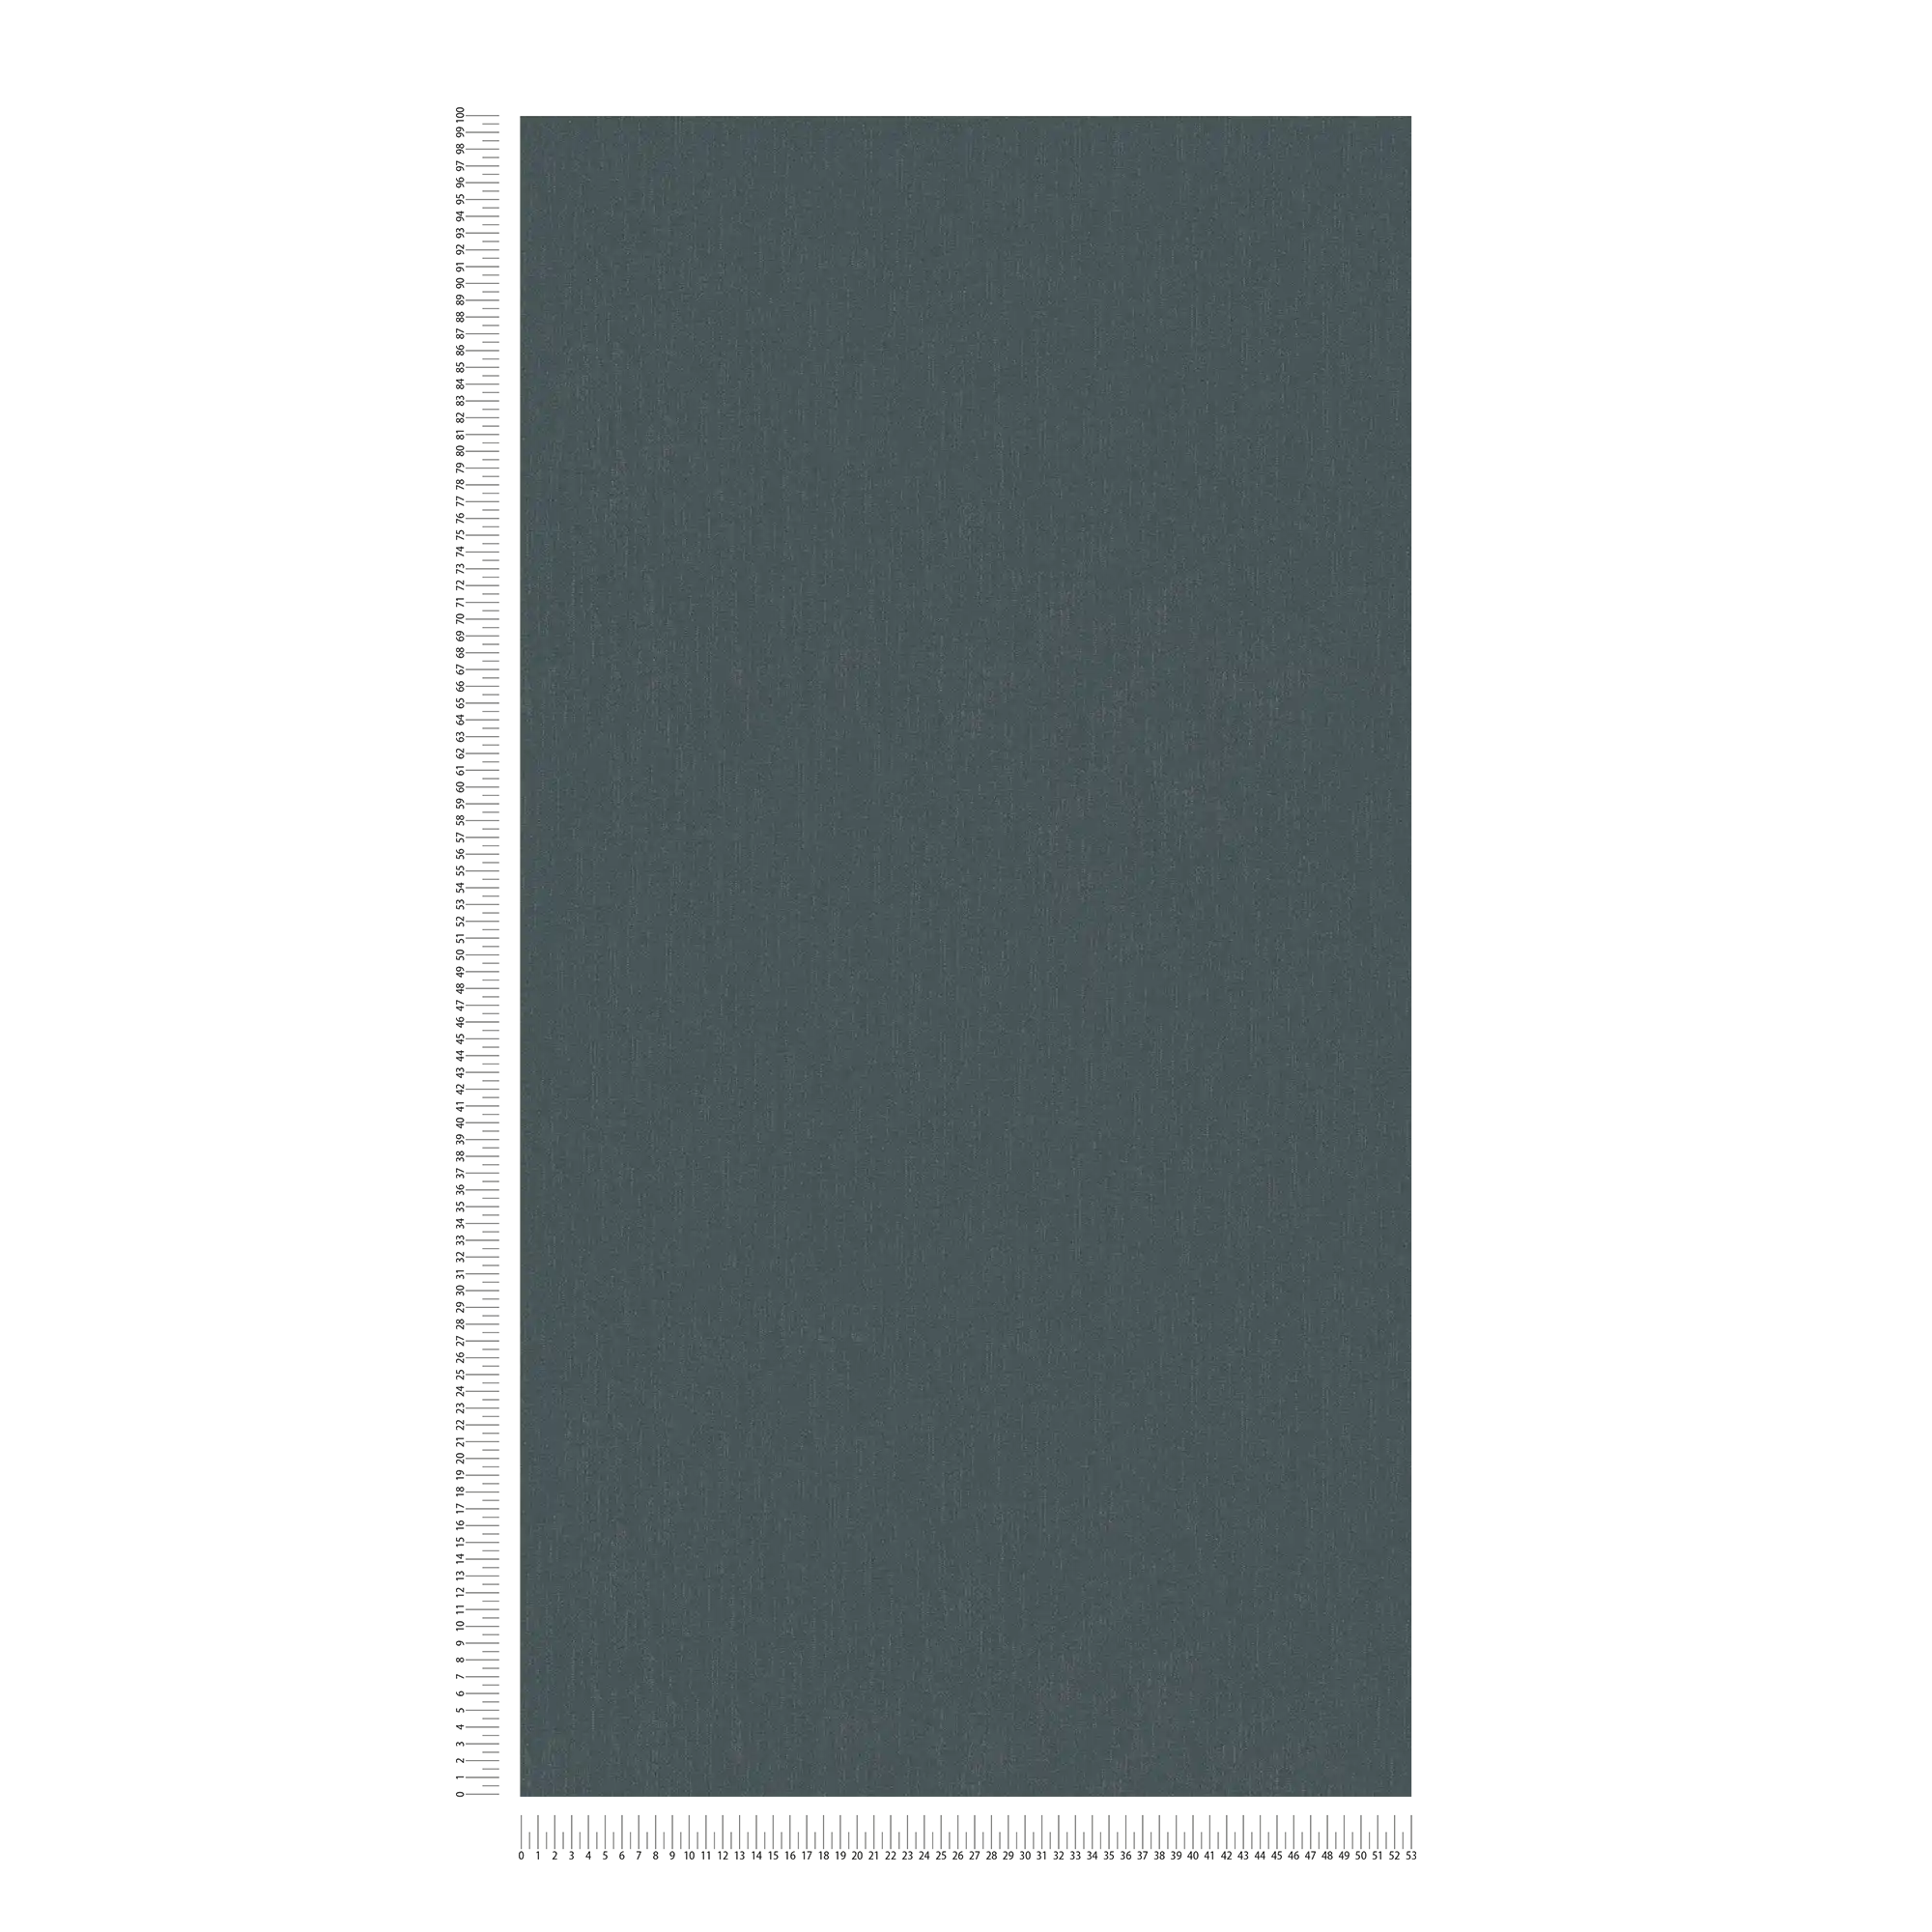             Papier peint gris anthracite avec effet brillant argenté - noir, gris
        